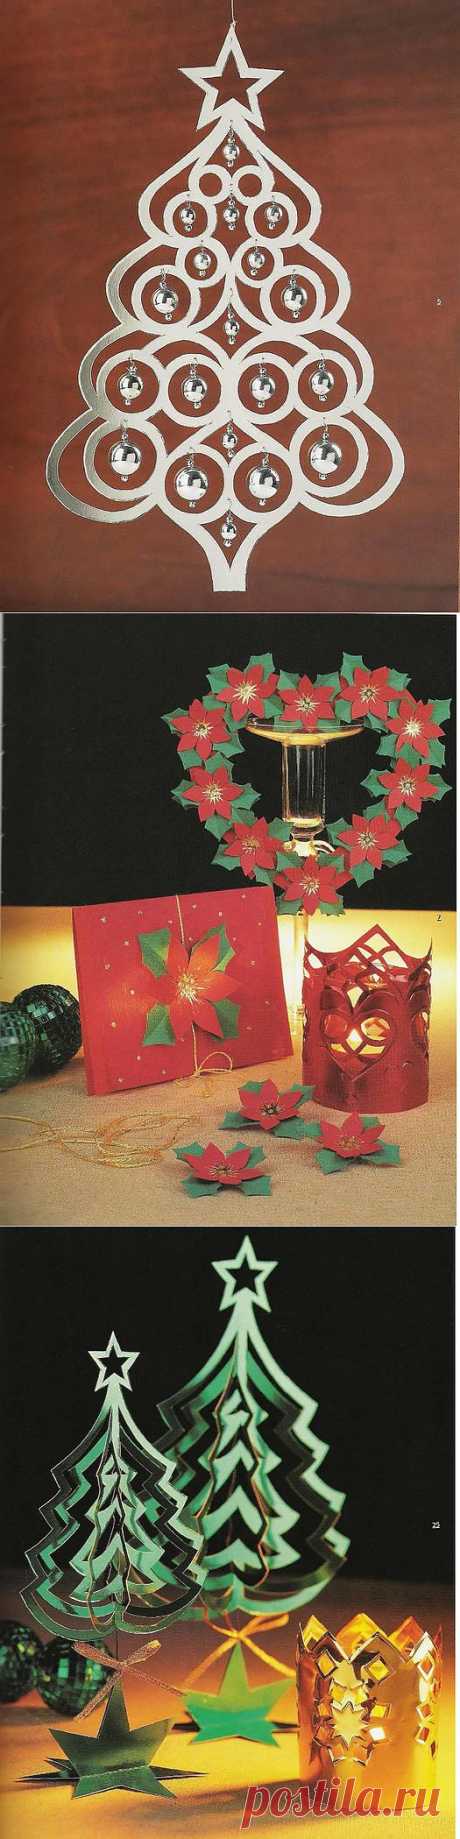 рождественские украшения из бумаги, картона, фольги, стразами, бисером ... | сделать ручной работы, вязание крючком, ремесла